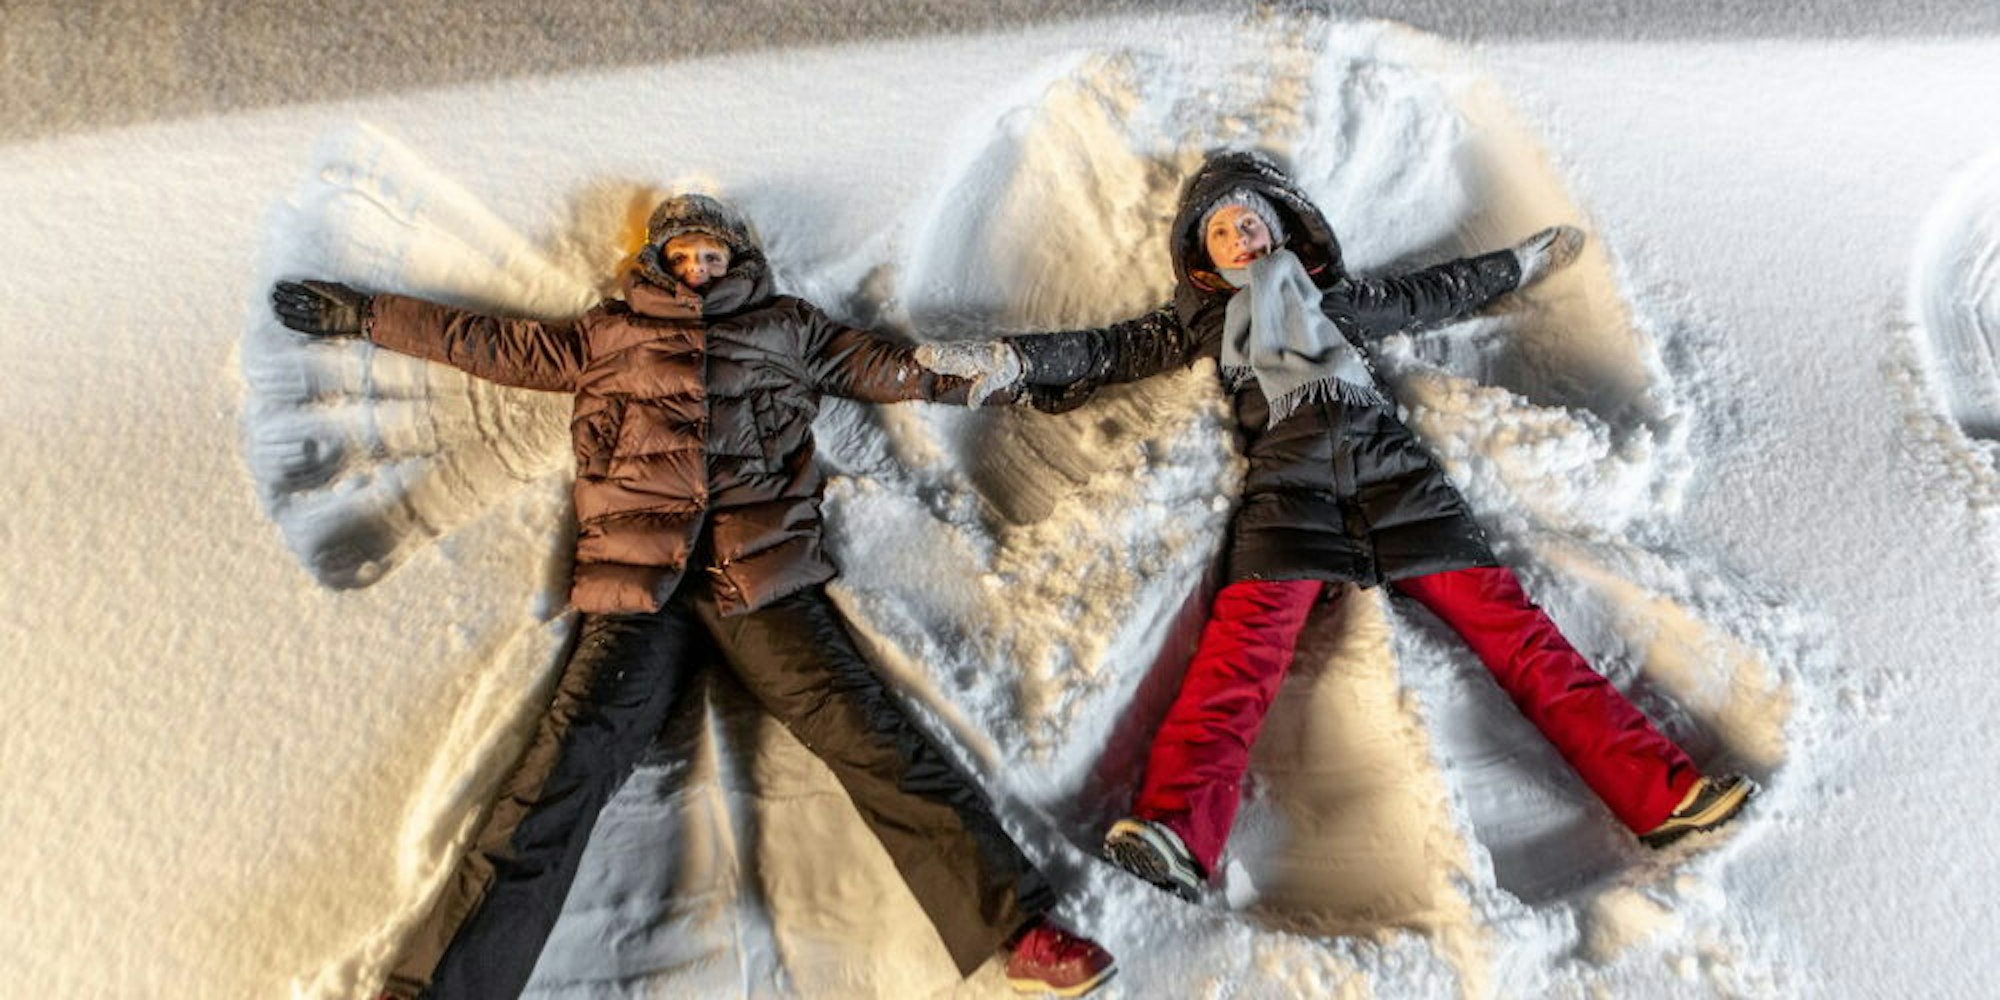 Gitta (Ulrike Kriener, l.) und ihre älteste Tochter Annika (Katharina Schüttler, r.) machen in der Nacht Schnee-Engel – eine Szene aus dem Film „ Weihnachten im Schnee“ von 2019, für den das Autorenduo das Buch geschrieben hat.